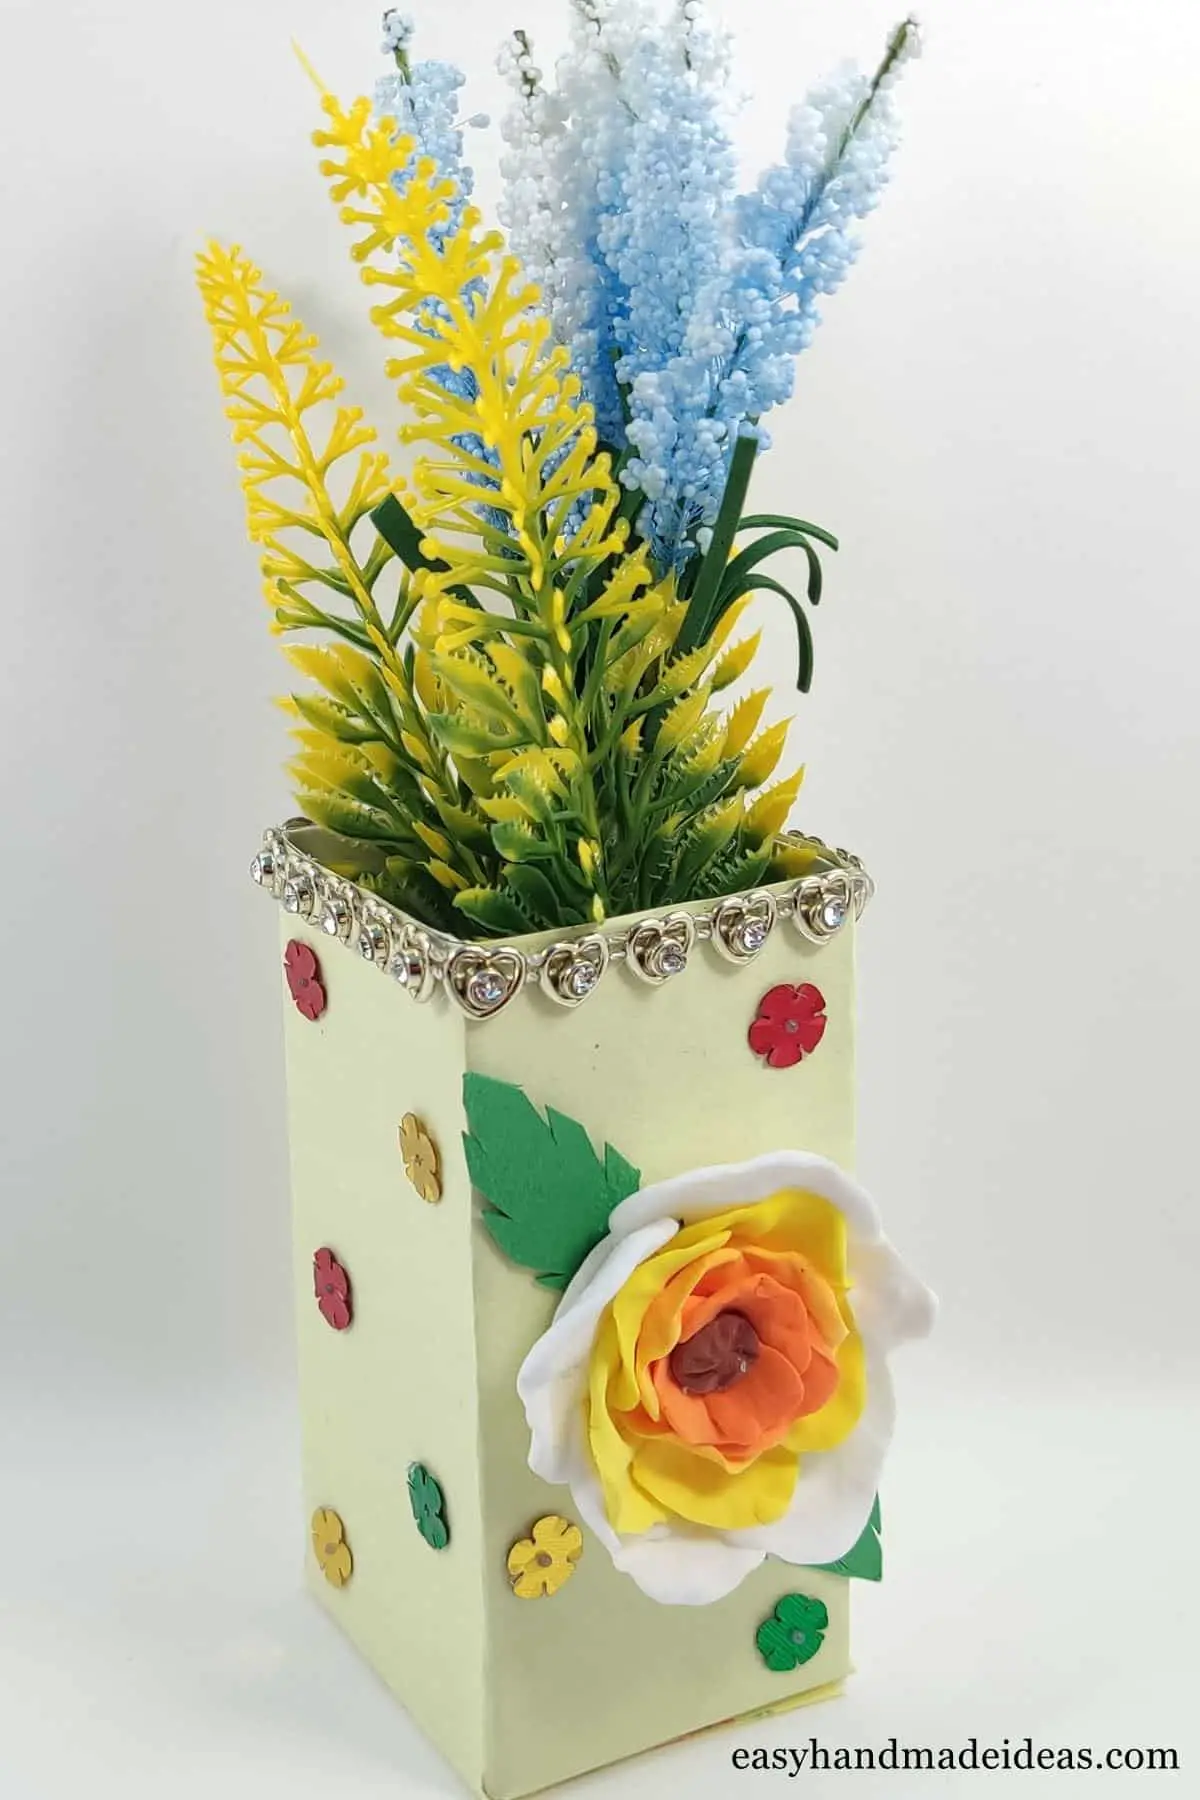 Ready-made flower vase